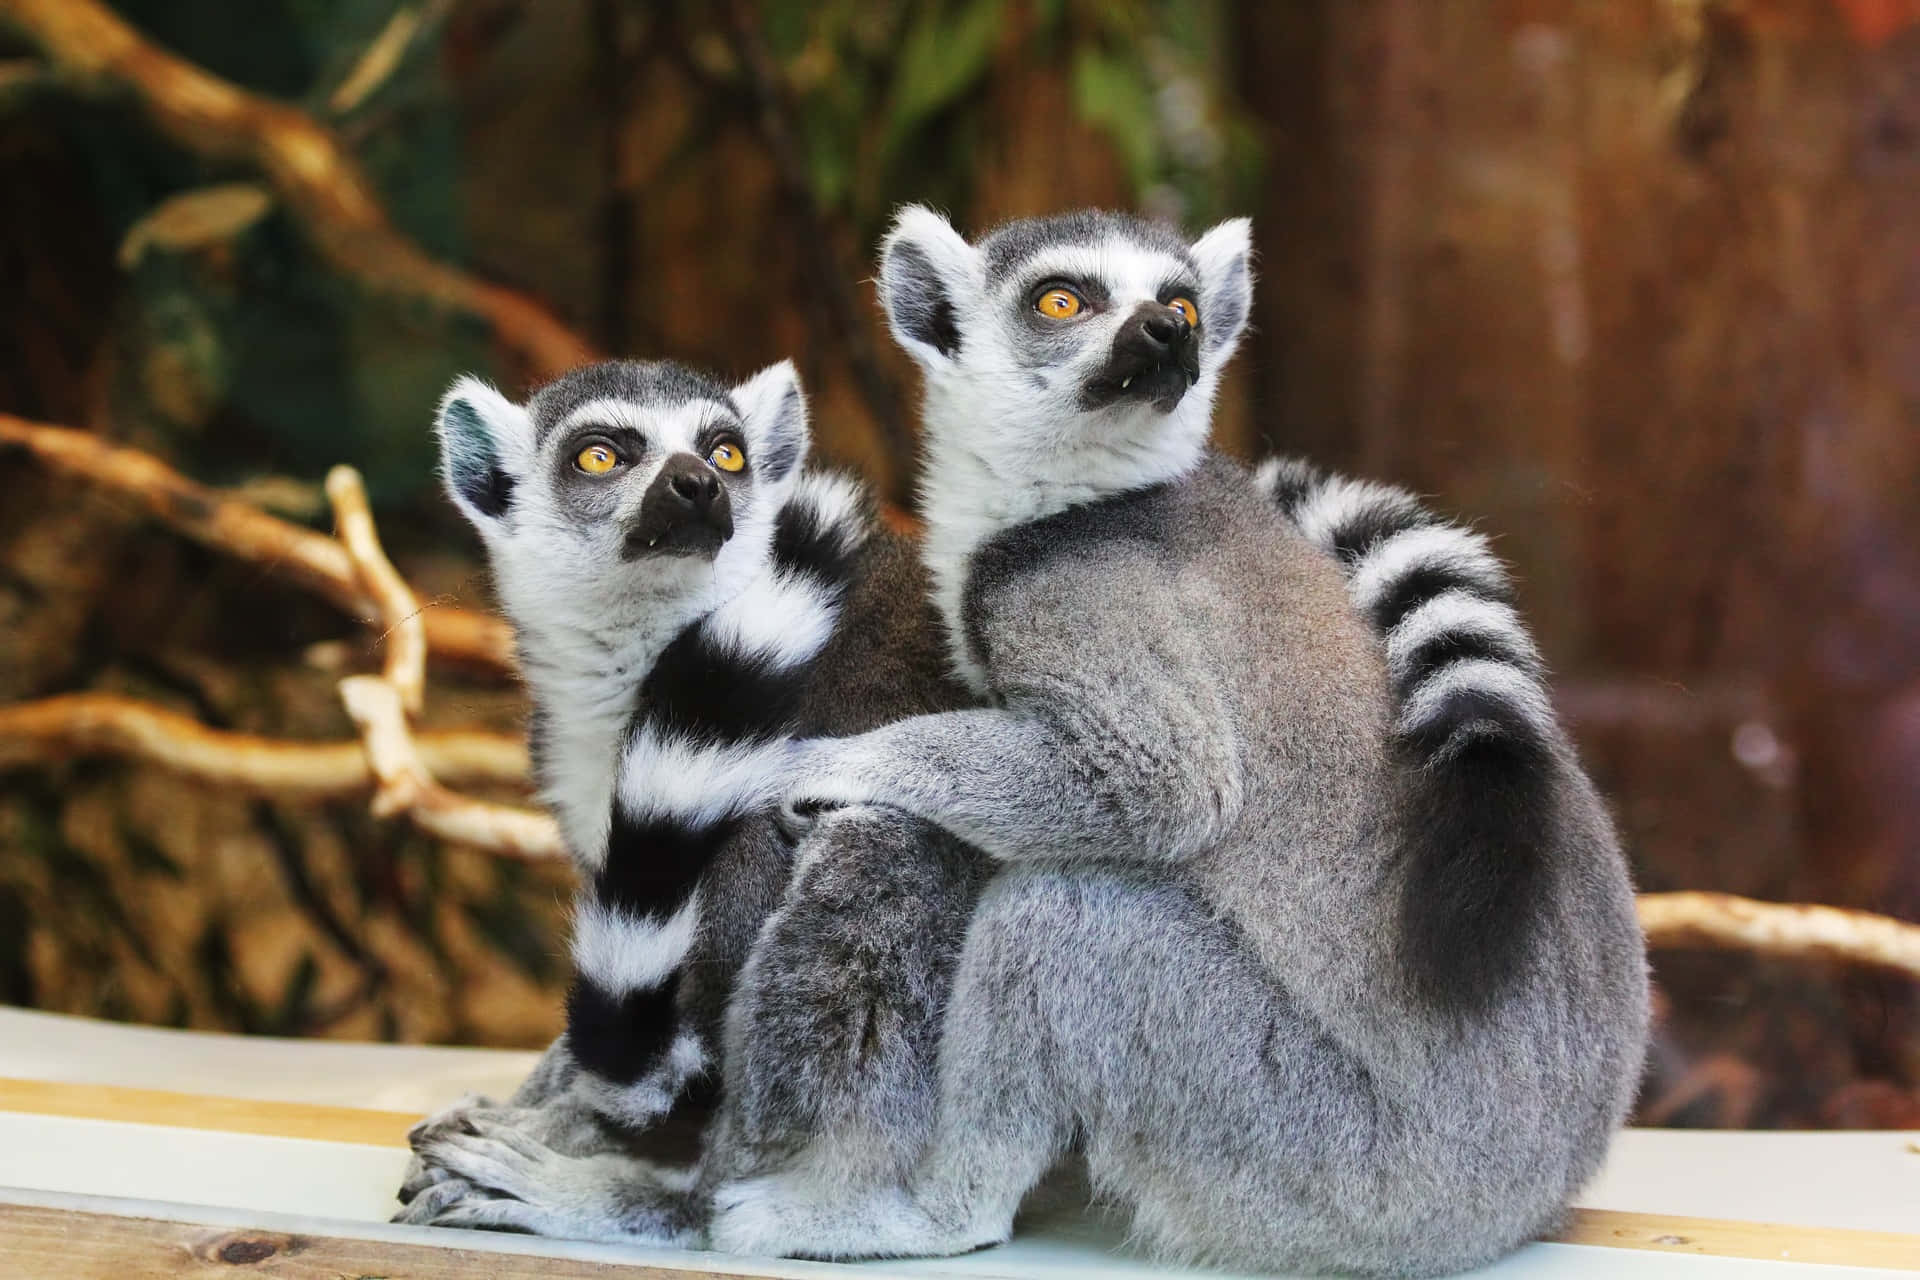 Unavisita Turistica Pomeridiana Nella Natura Selvaggia: Esplorare La Vivace Vita Dello Zoo